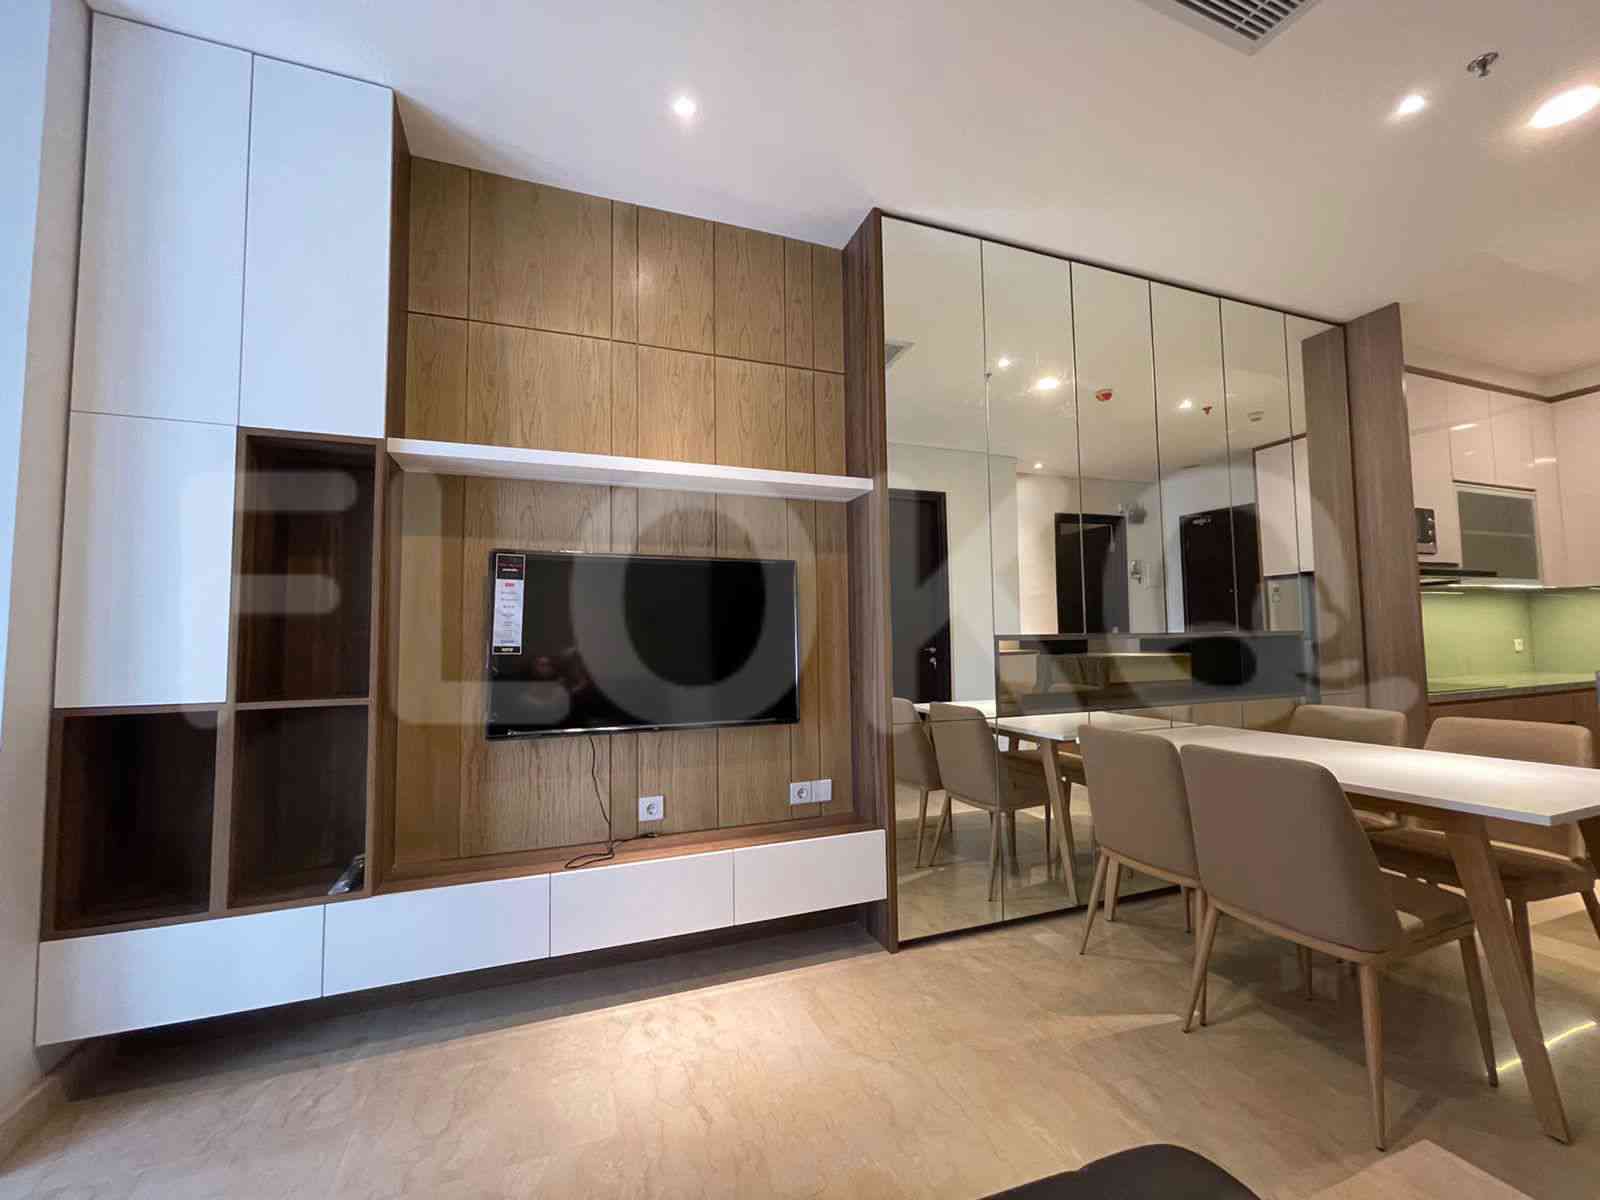 3 Bedroom on 10th Floor for Rent in Sudirman Suites Jakarta - fsuaf7 2